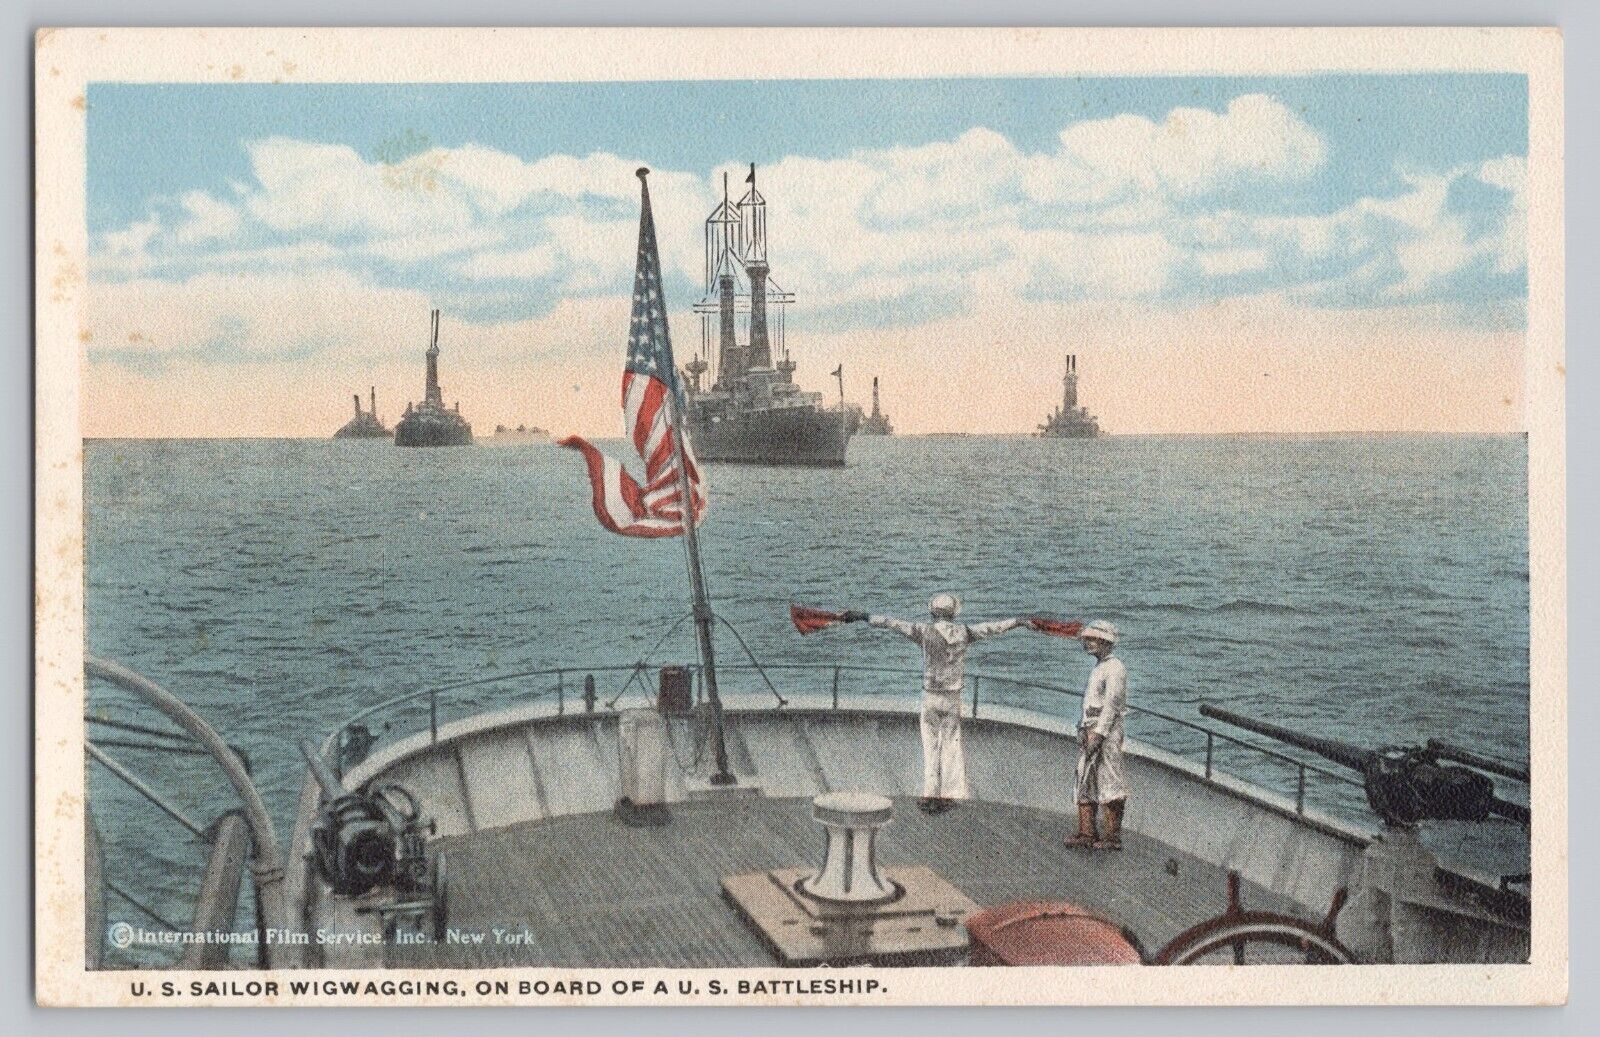 U. S. Sailor Wigwagging Battleship postcard Sailors Signaling 1920s/1930s USN